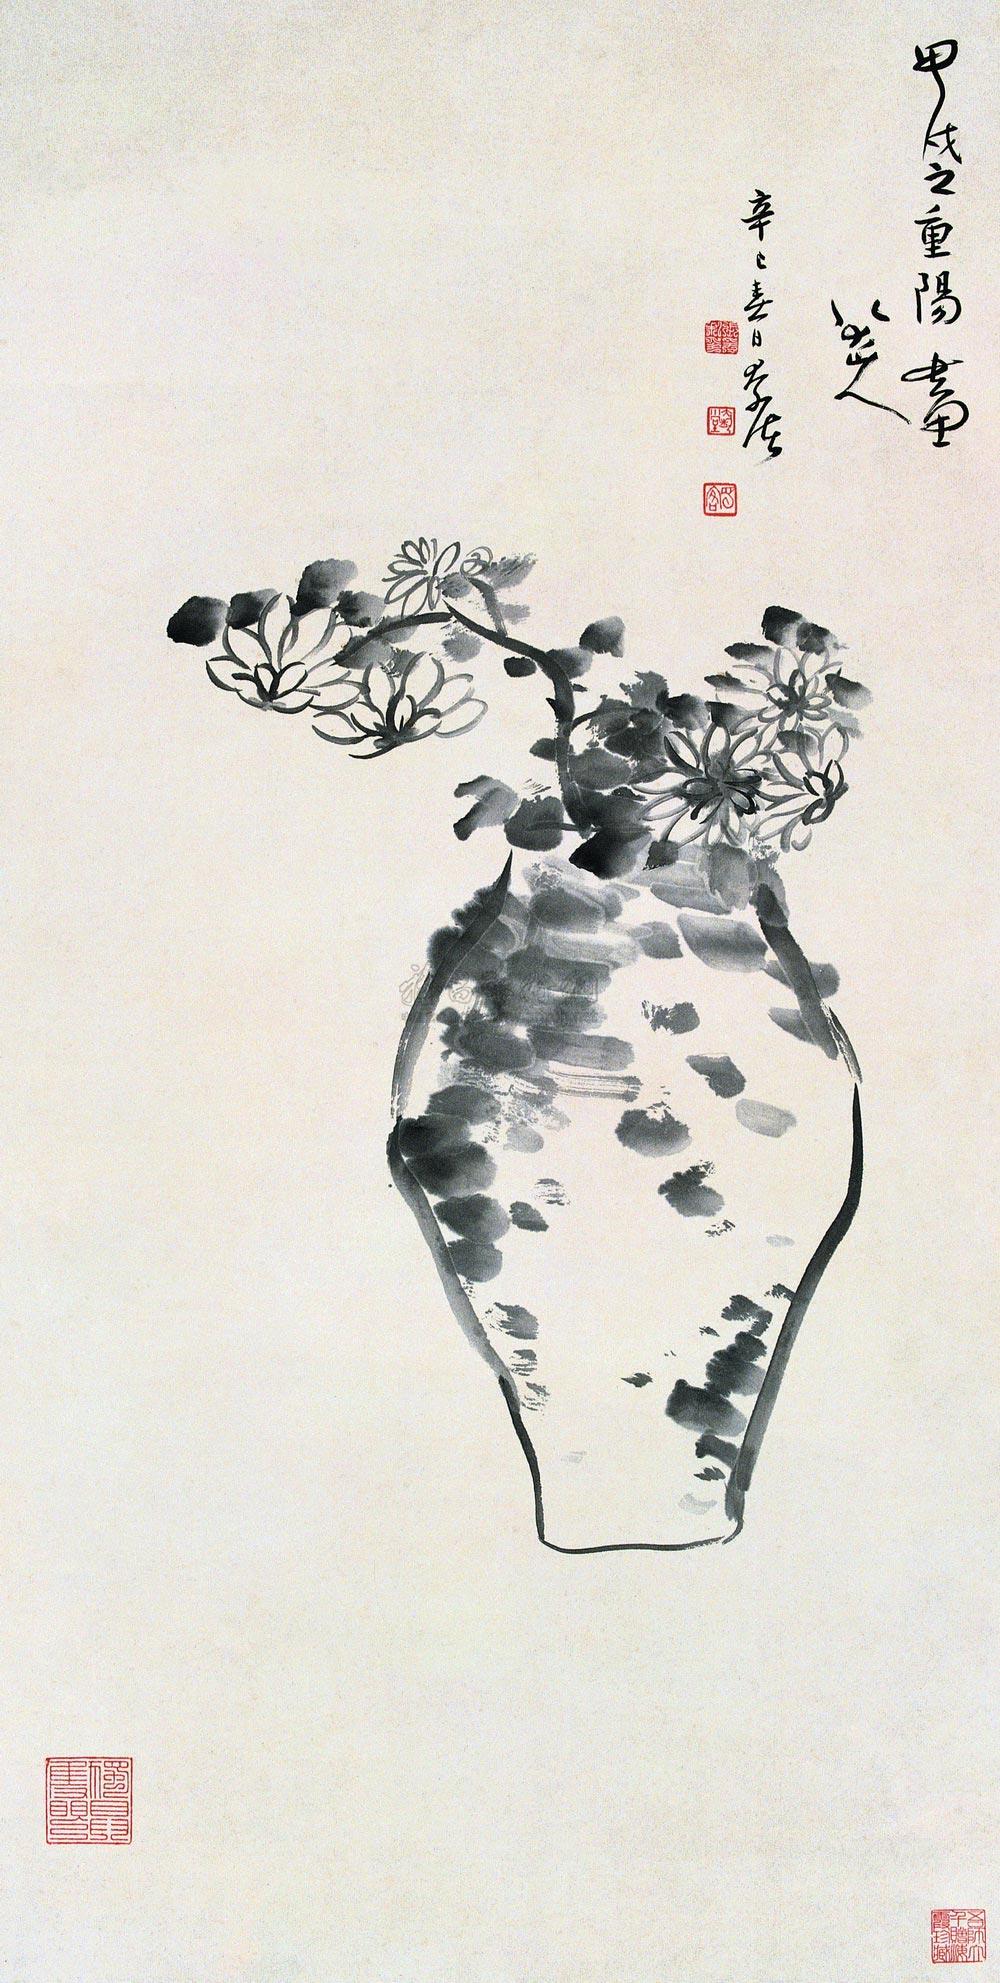 0483 辛巳(1941)年作 仿八大瓶菊图 立轴 水墨纸本